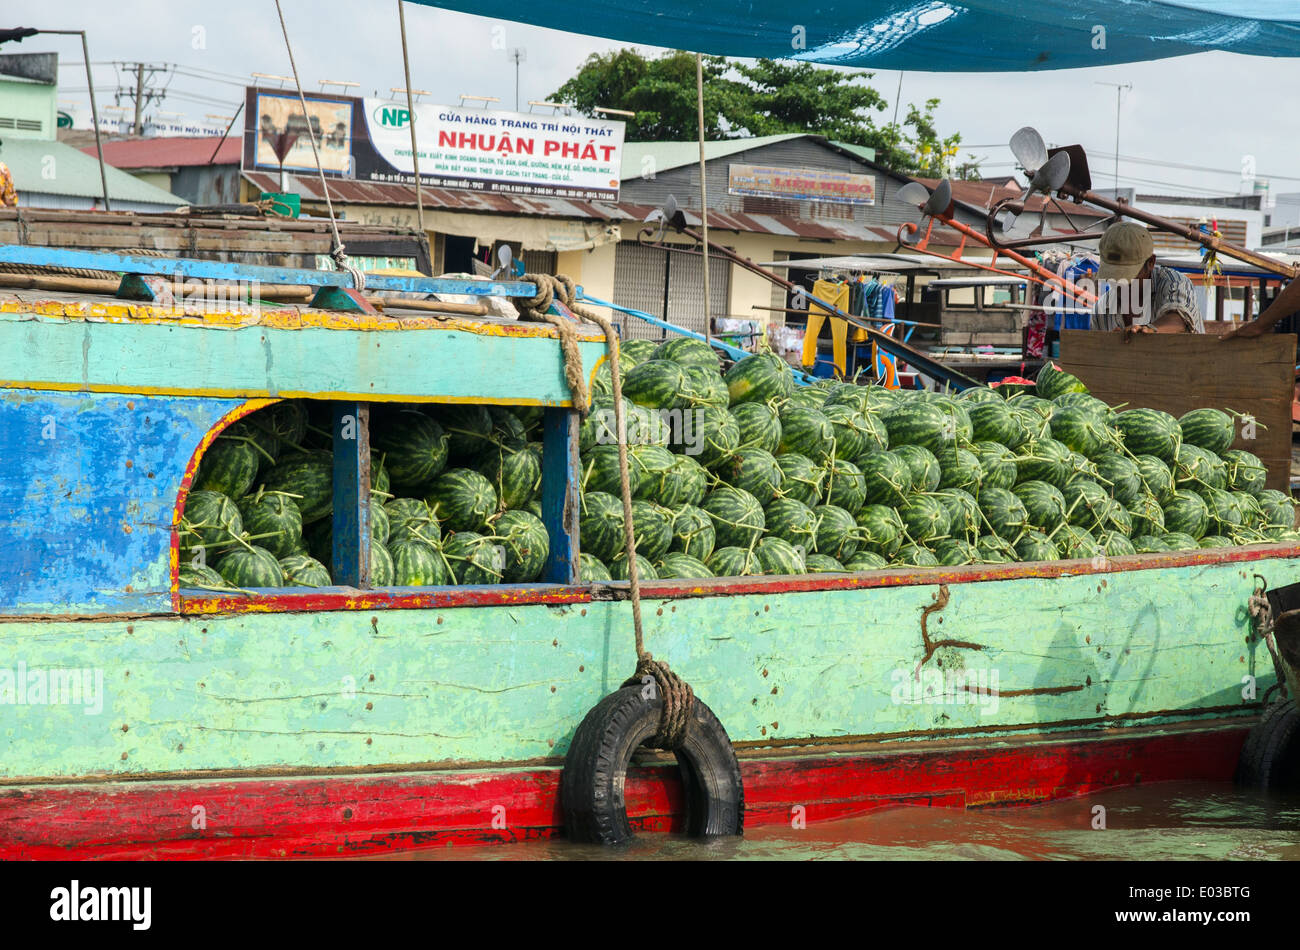 Les pastèques sur la vente, pouvez sonna, le marché flottant de Can Tho, Vietnam Banque D'Images